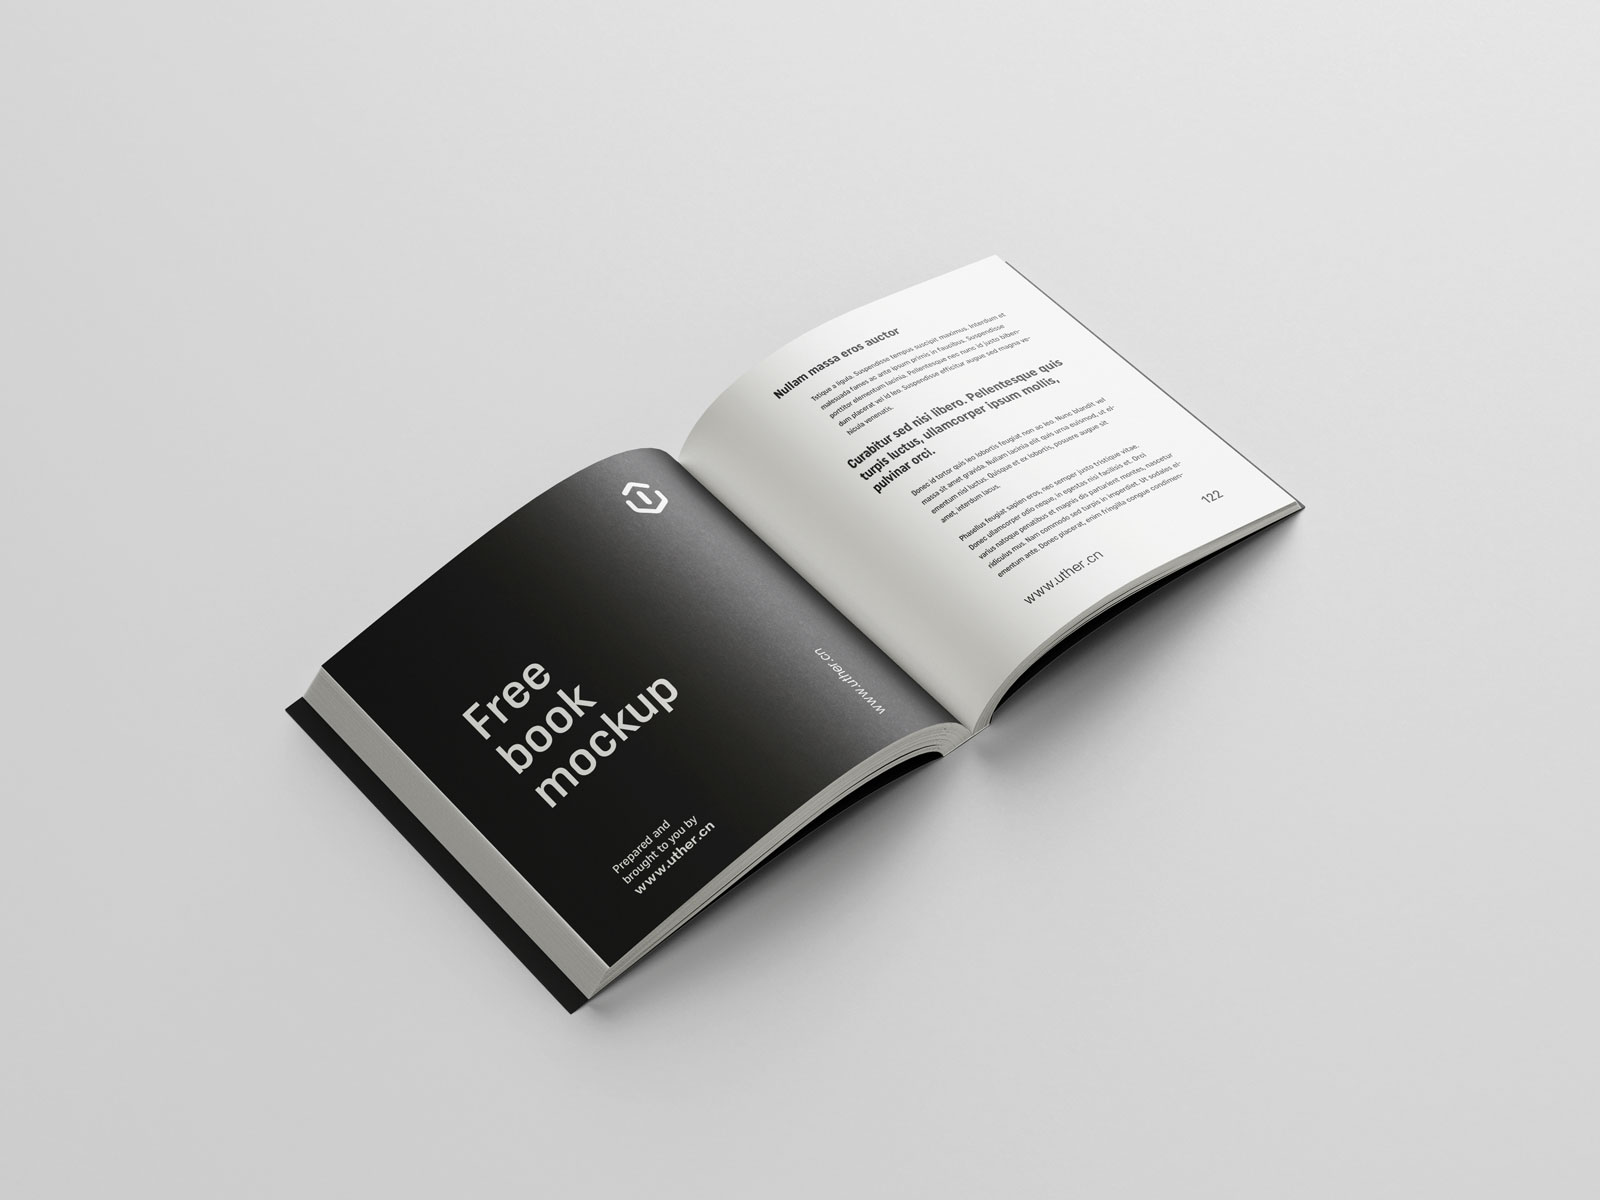 简约大气平装方形书籍内页展示设计提案贴图PSD样机模版book mockup